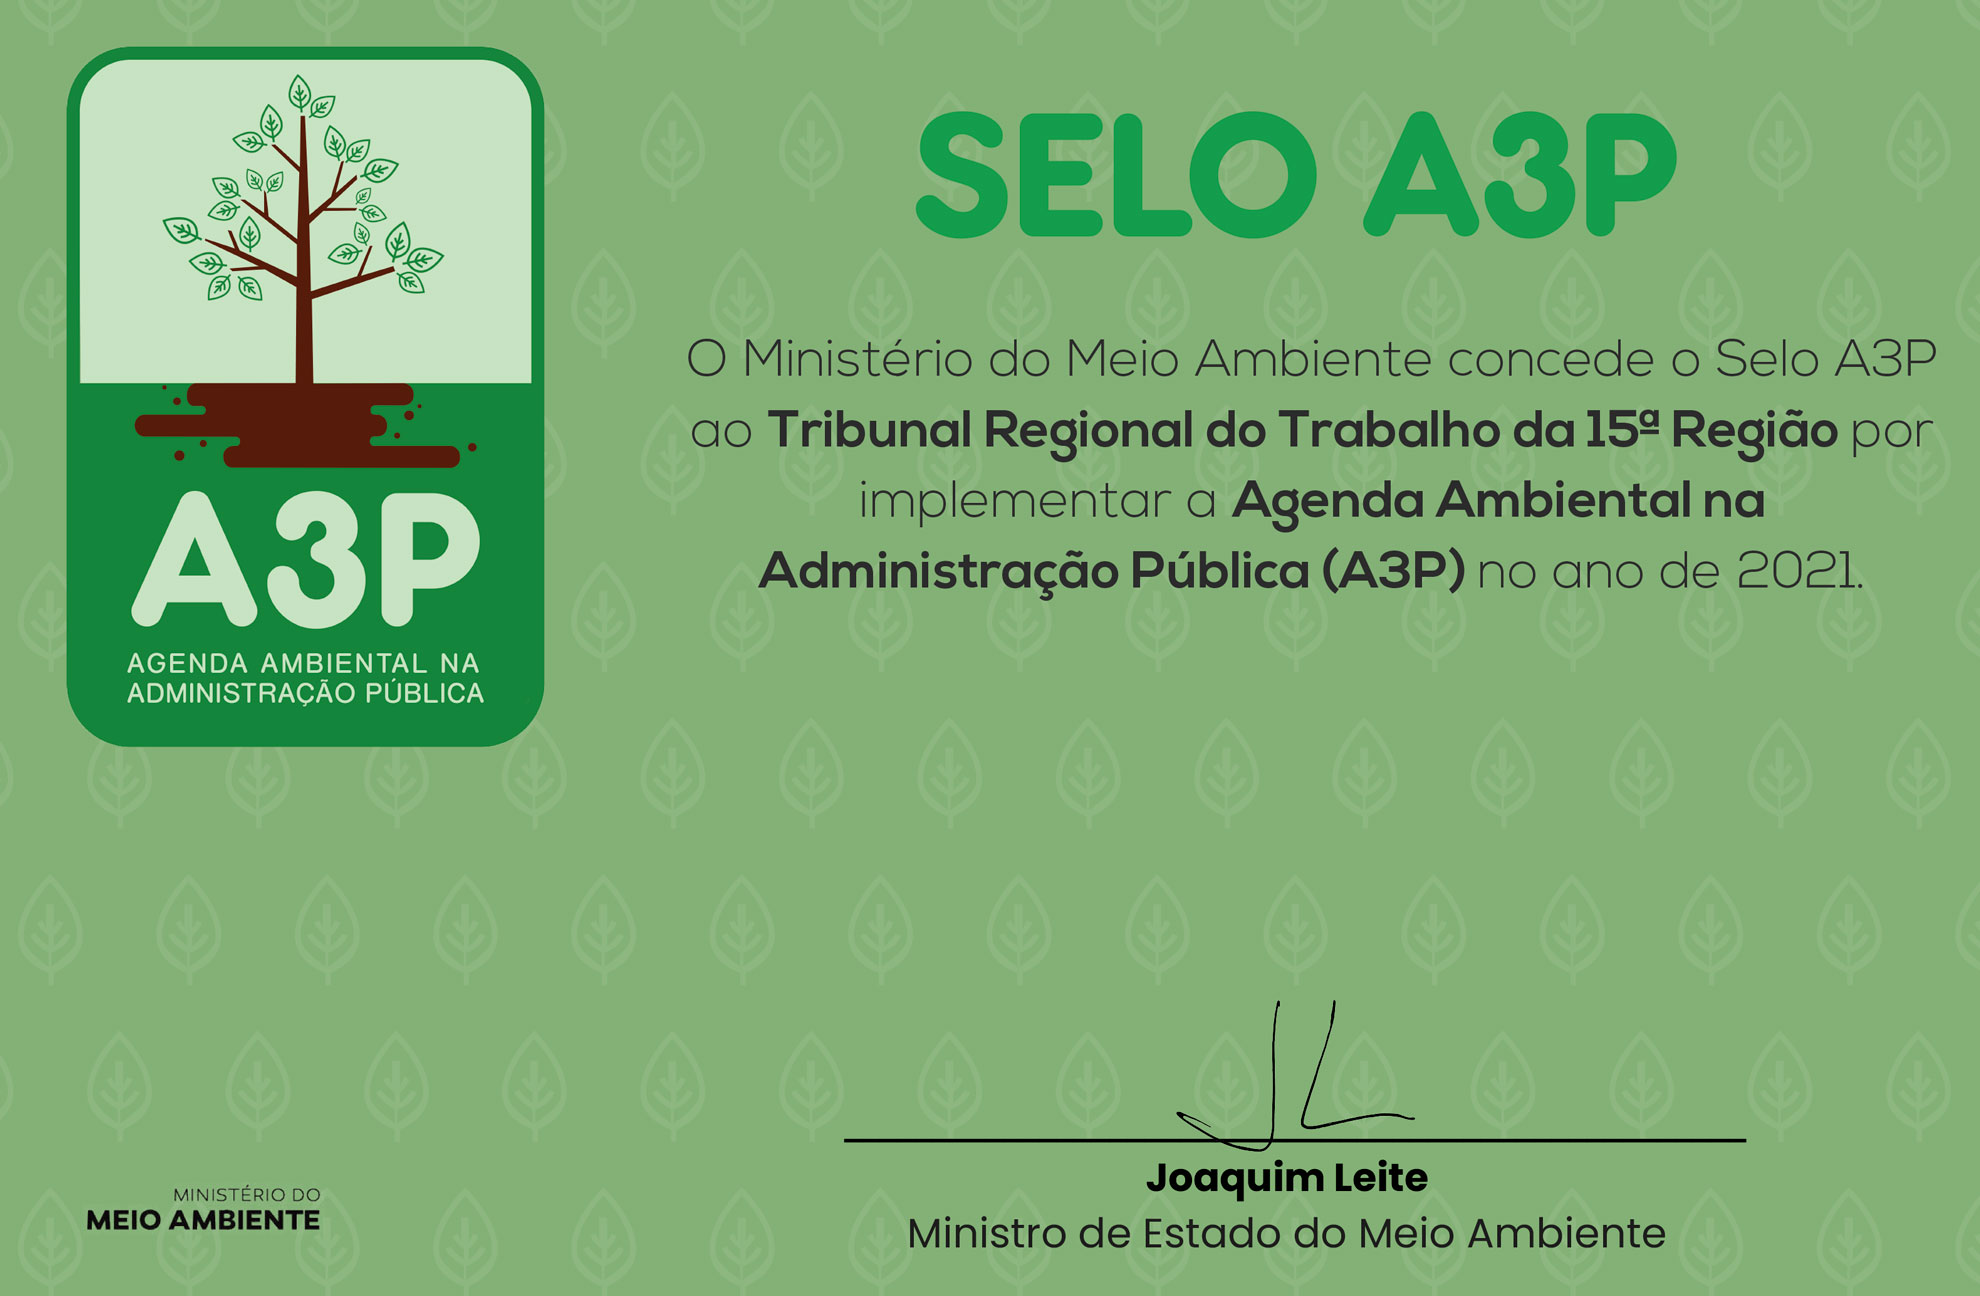 Imagem do certificado em que o Ministério do Meio Ambiente informa ter concedido o selo A3P ao TRT da 15ª Região